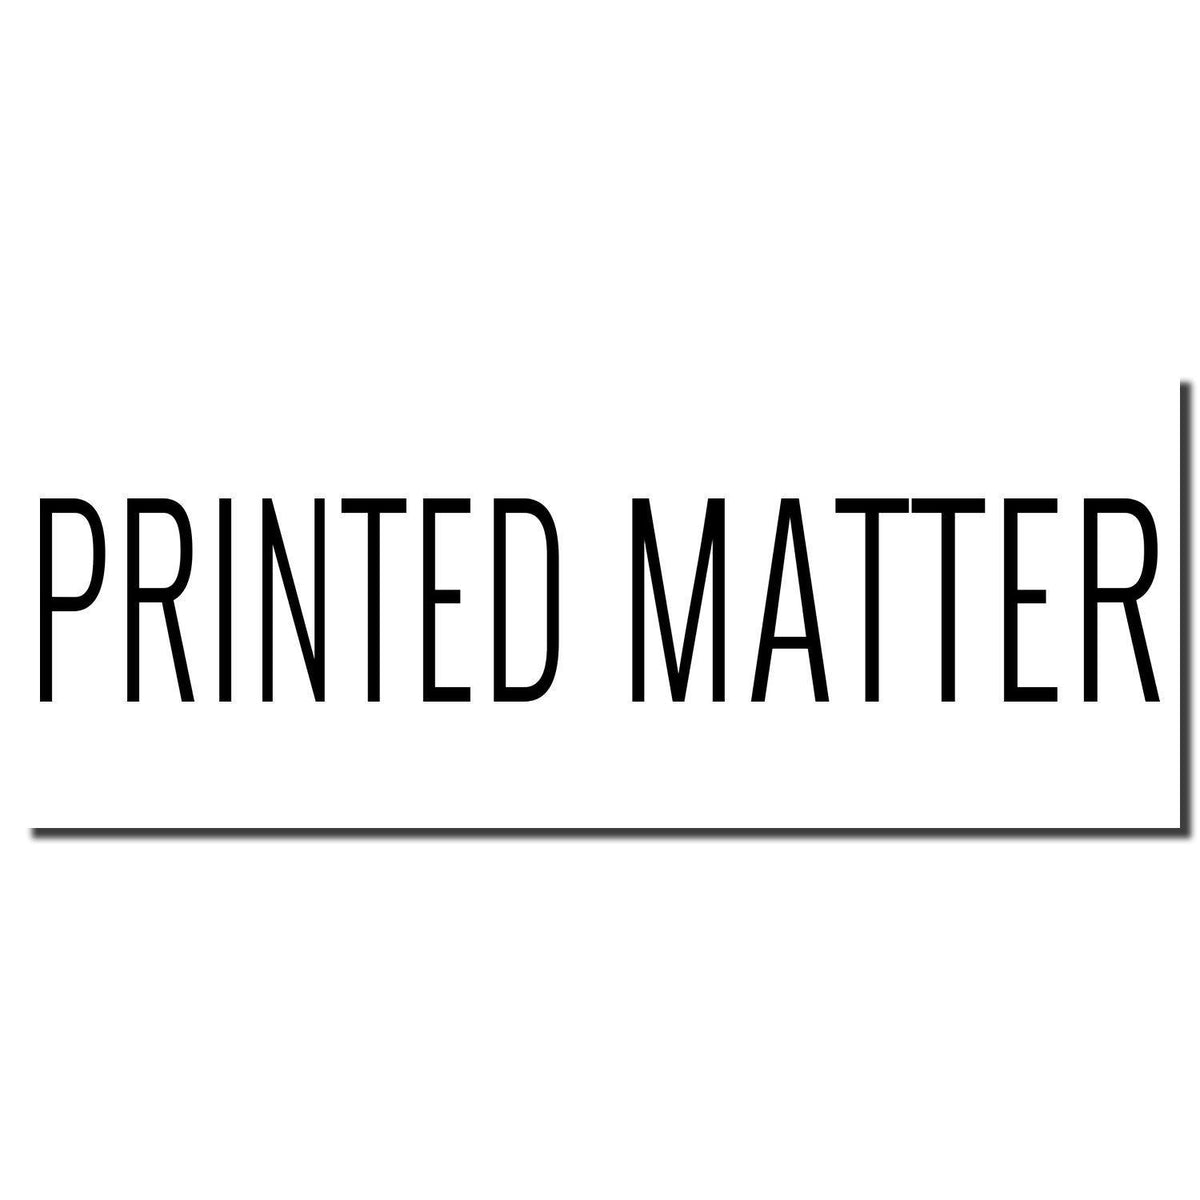 Enlarged Imprint Large Pre-Inked Printed Matter Stamp Sample